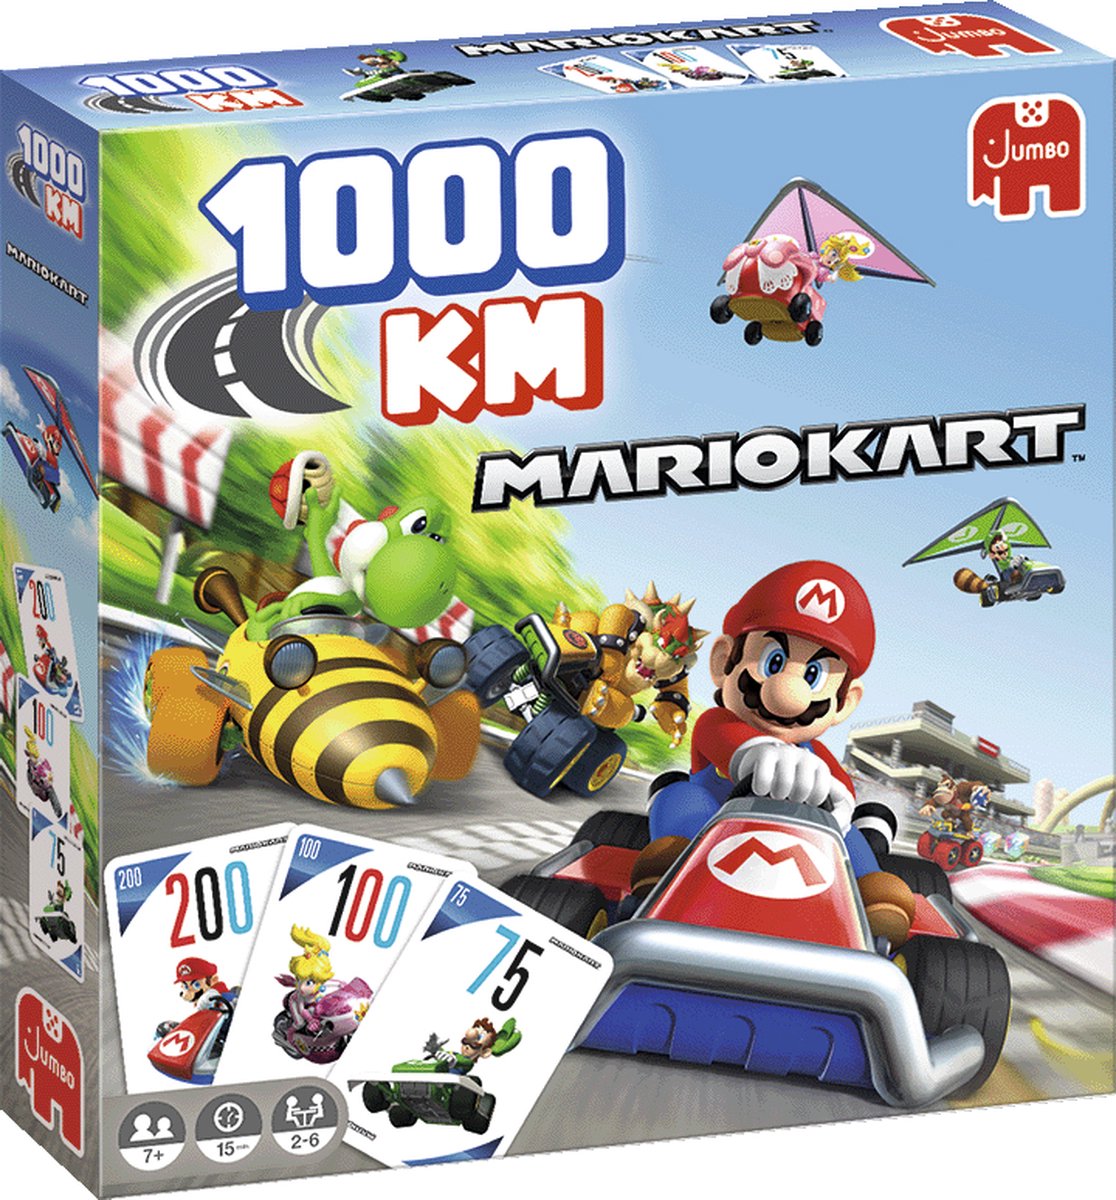 Jumbo Spel 1000 KM Mario Kart